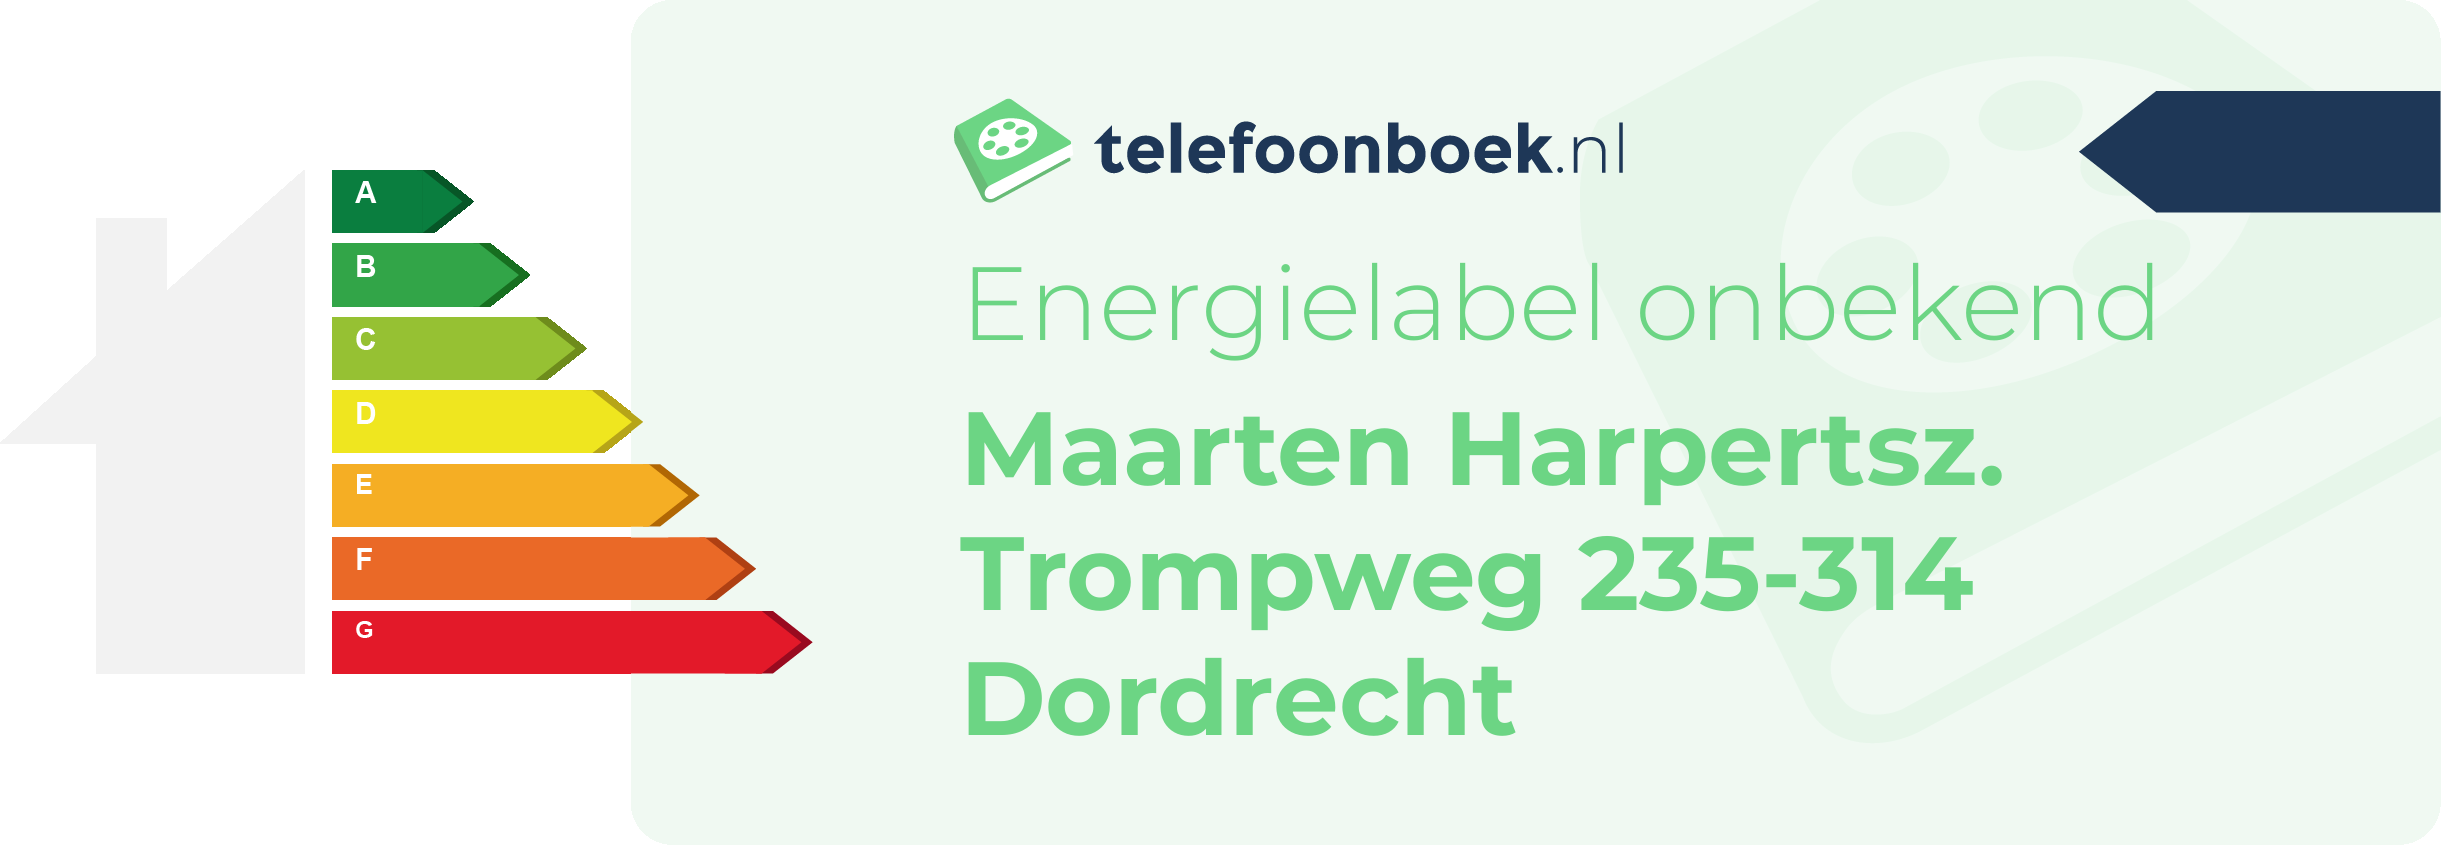 Energielabel Maarten Harpertsz. Trompweg 235-314 Dordrecht